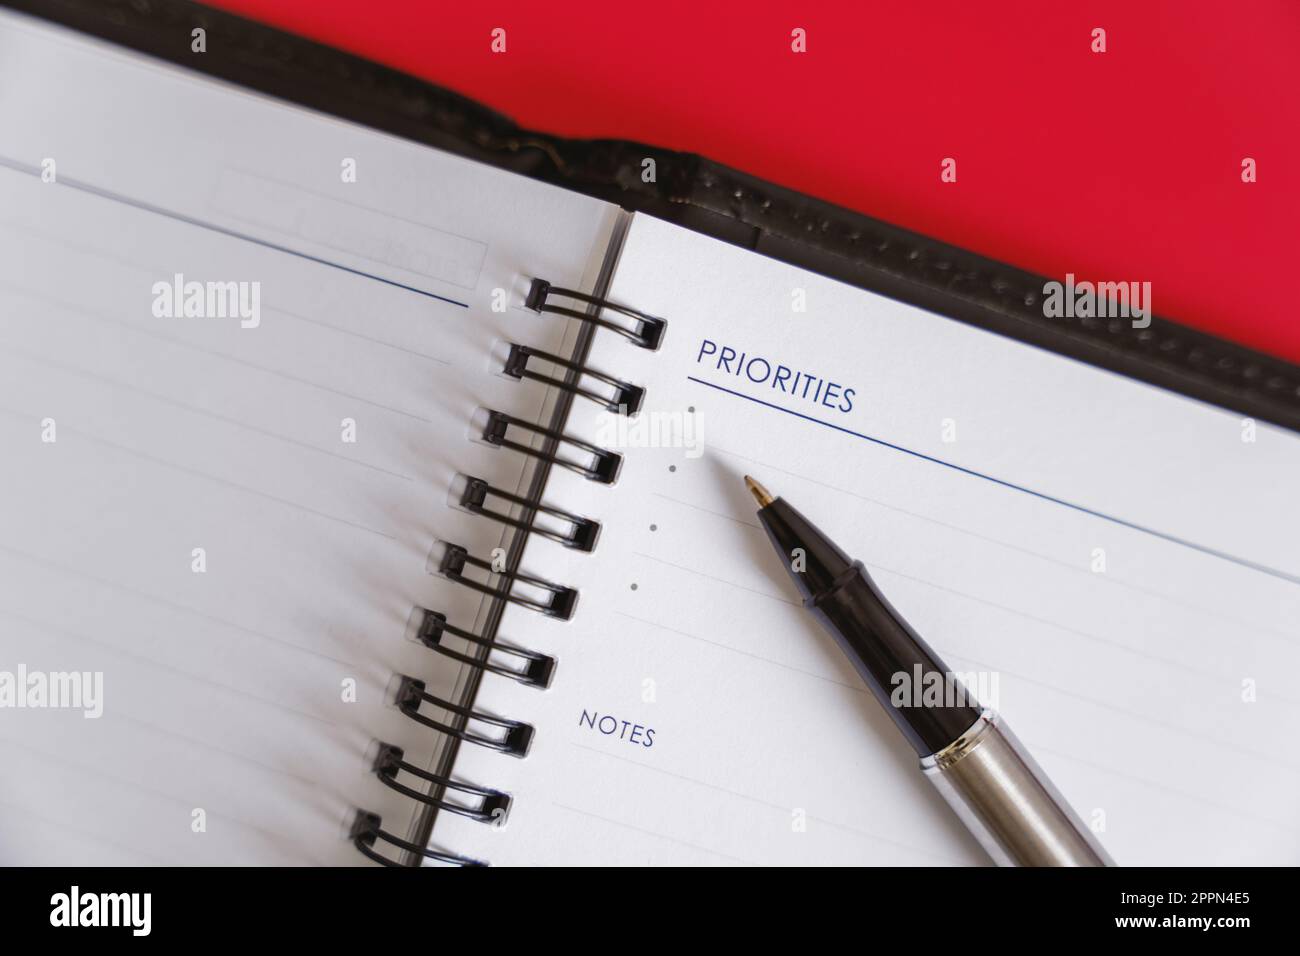 'Planification quotidienne avec Personal Planner' - Un planificateur personnel et un stylo pour la planification quotidienne sur fond rouge. Banque D'Images